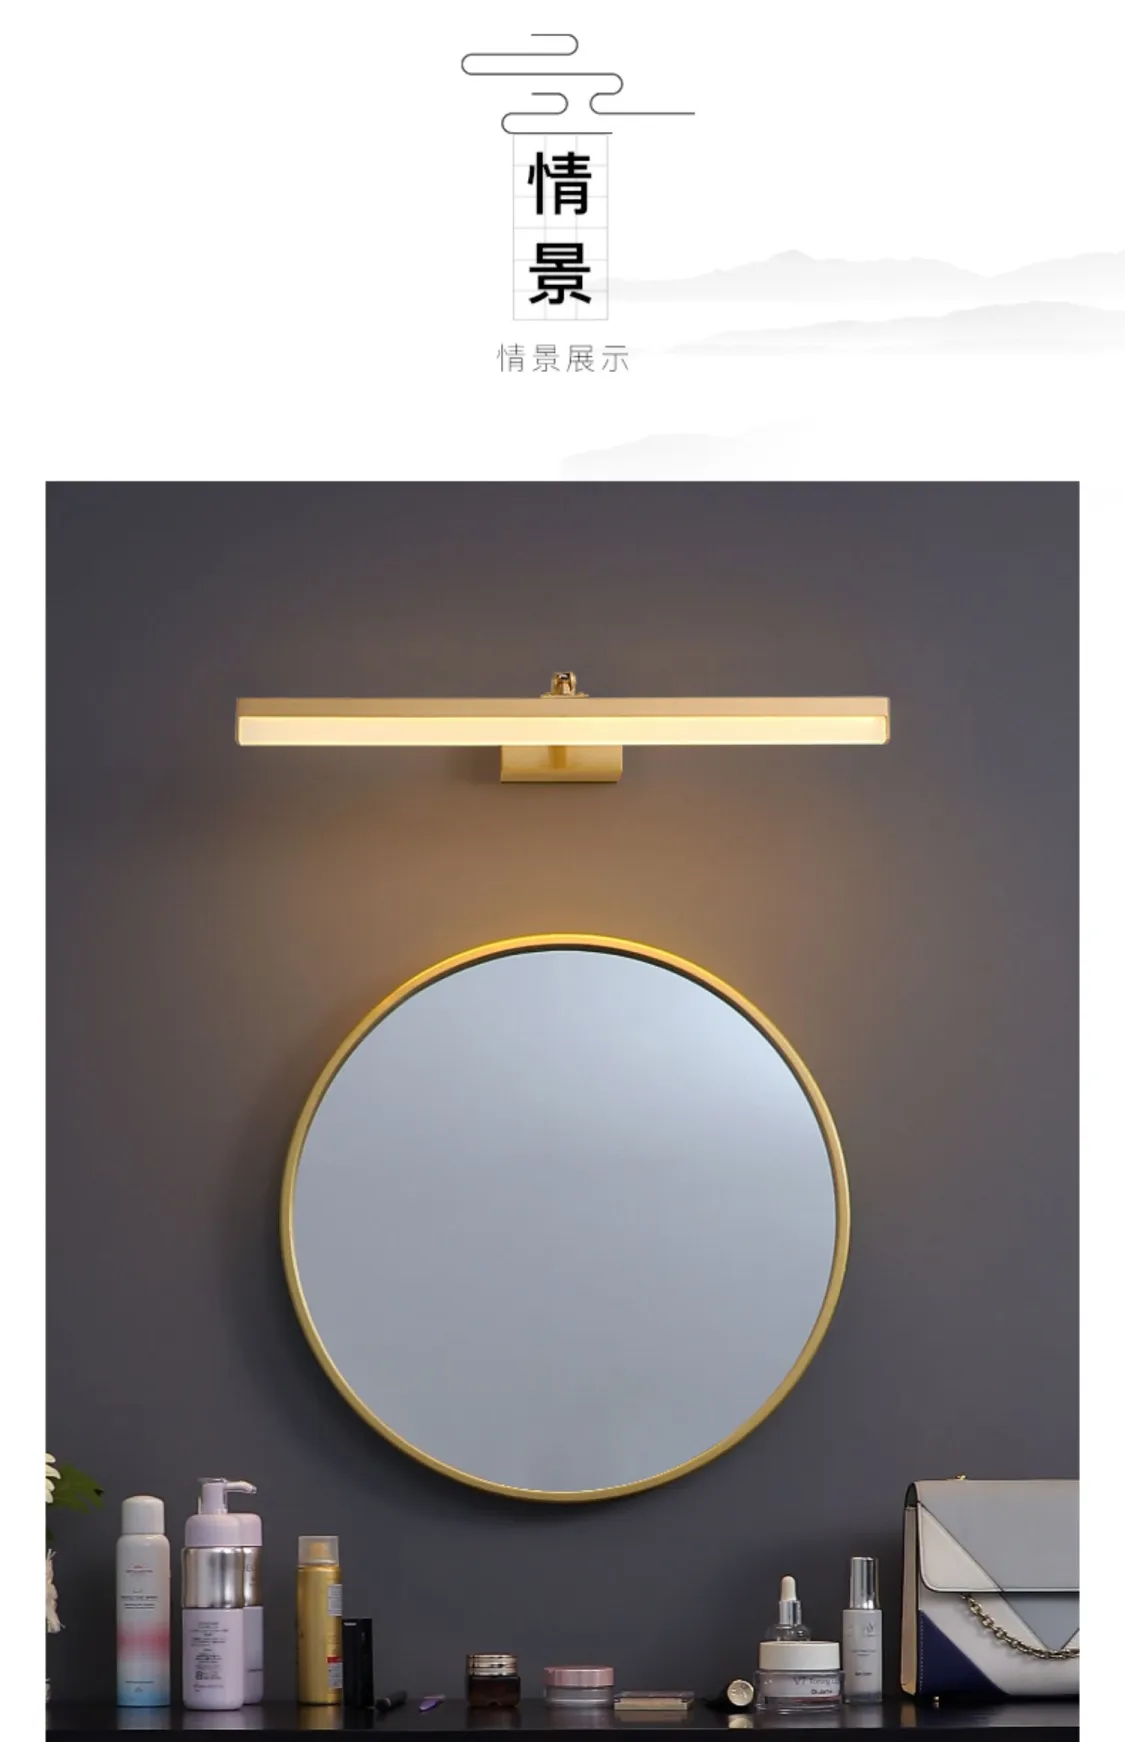 月影灯饰全铜led卫生间镜前灯梳妆镜柜壁灯复古浴室简约创意壁灯(图7)